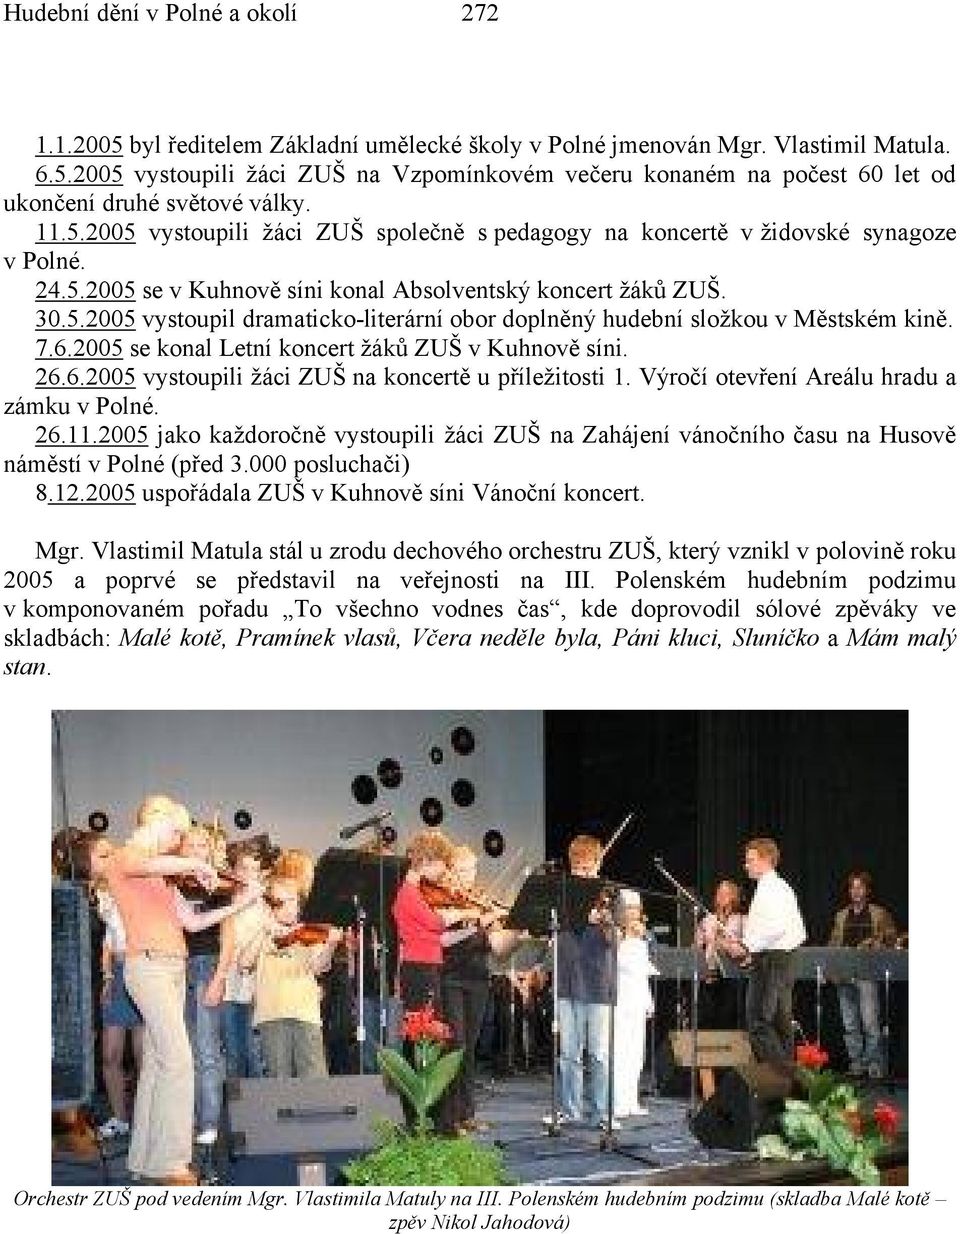 7.6.2005 se konal Letní koncert žáků ZUŠ v Kuhnově síni. 26.6.2005 vystoupili žáci ZUŠ na koncertě u příležitosti 1. Výročí otevření Areálu hradu a zámku v Polné. 26.11.